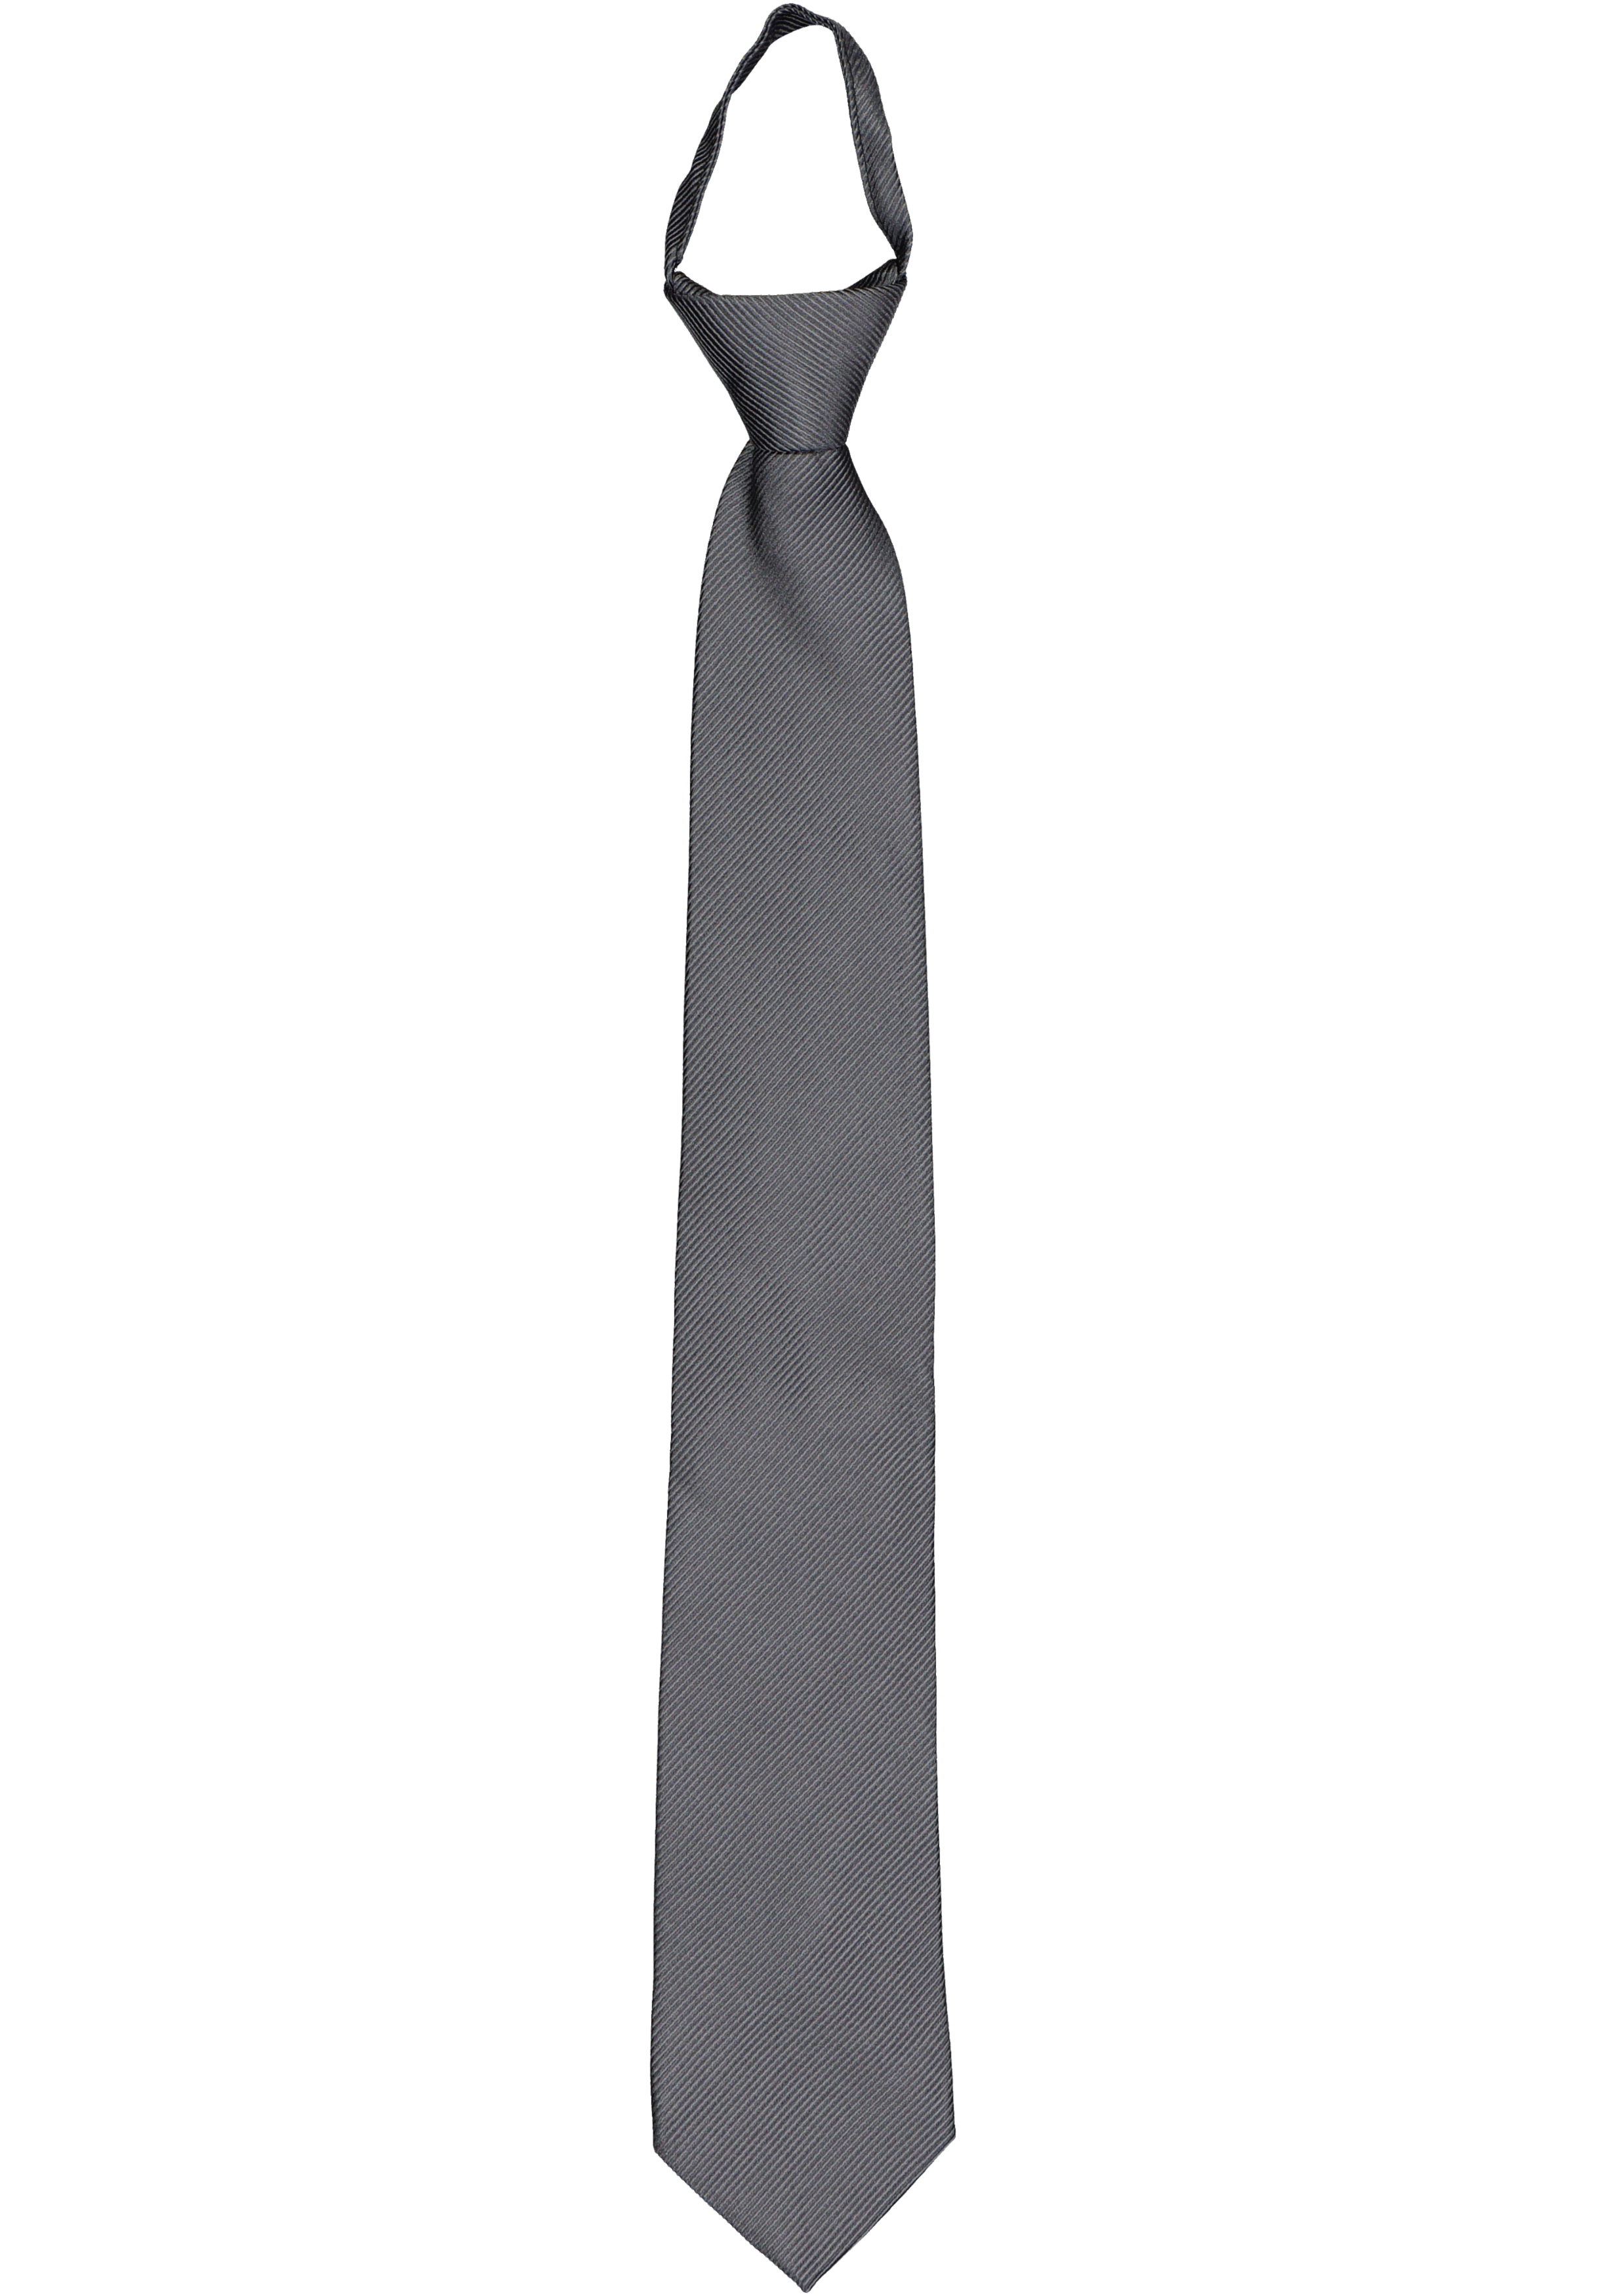 Los Korst Rijk Pelucio voorgeknoopte stropdas met rits, antraciet grijs - Shop de nieuwste  voorjaarsmode